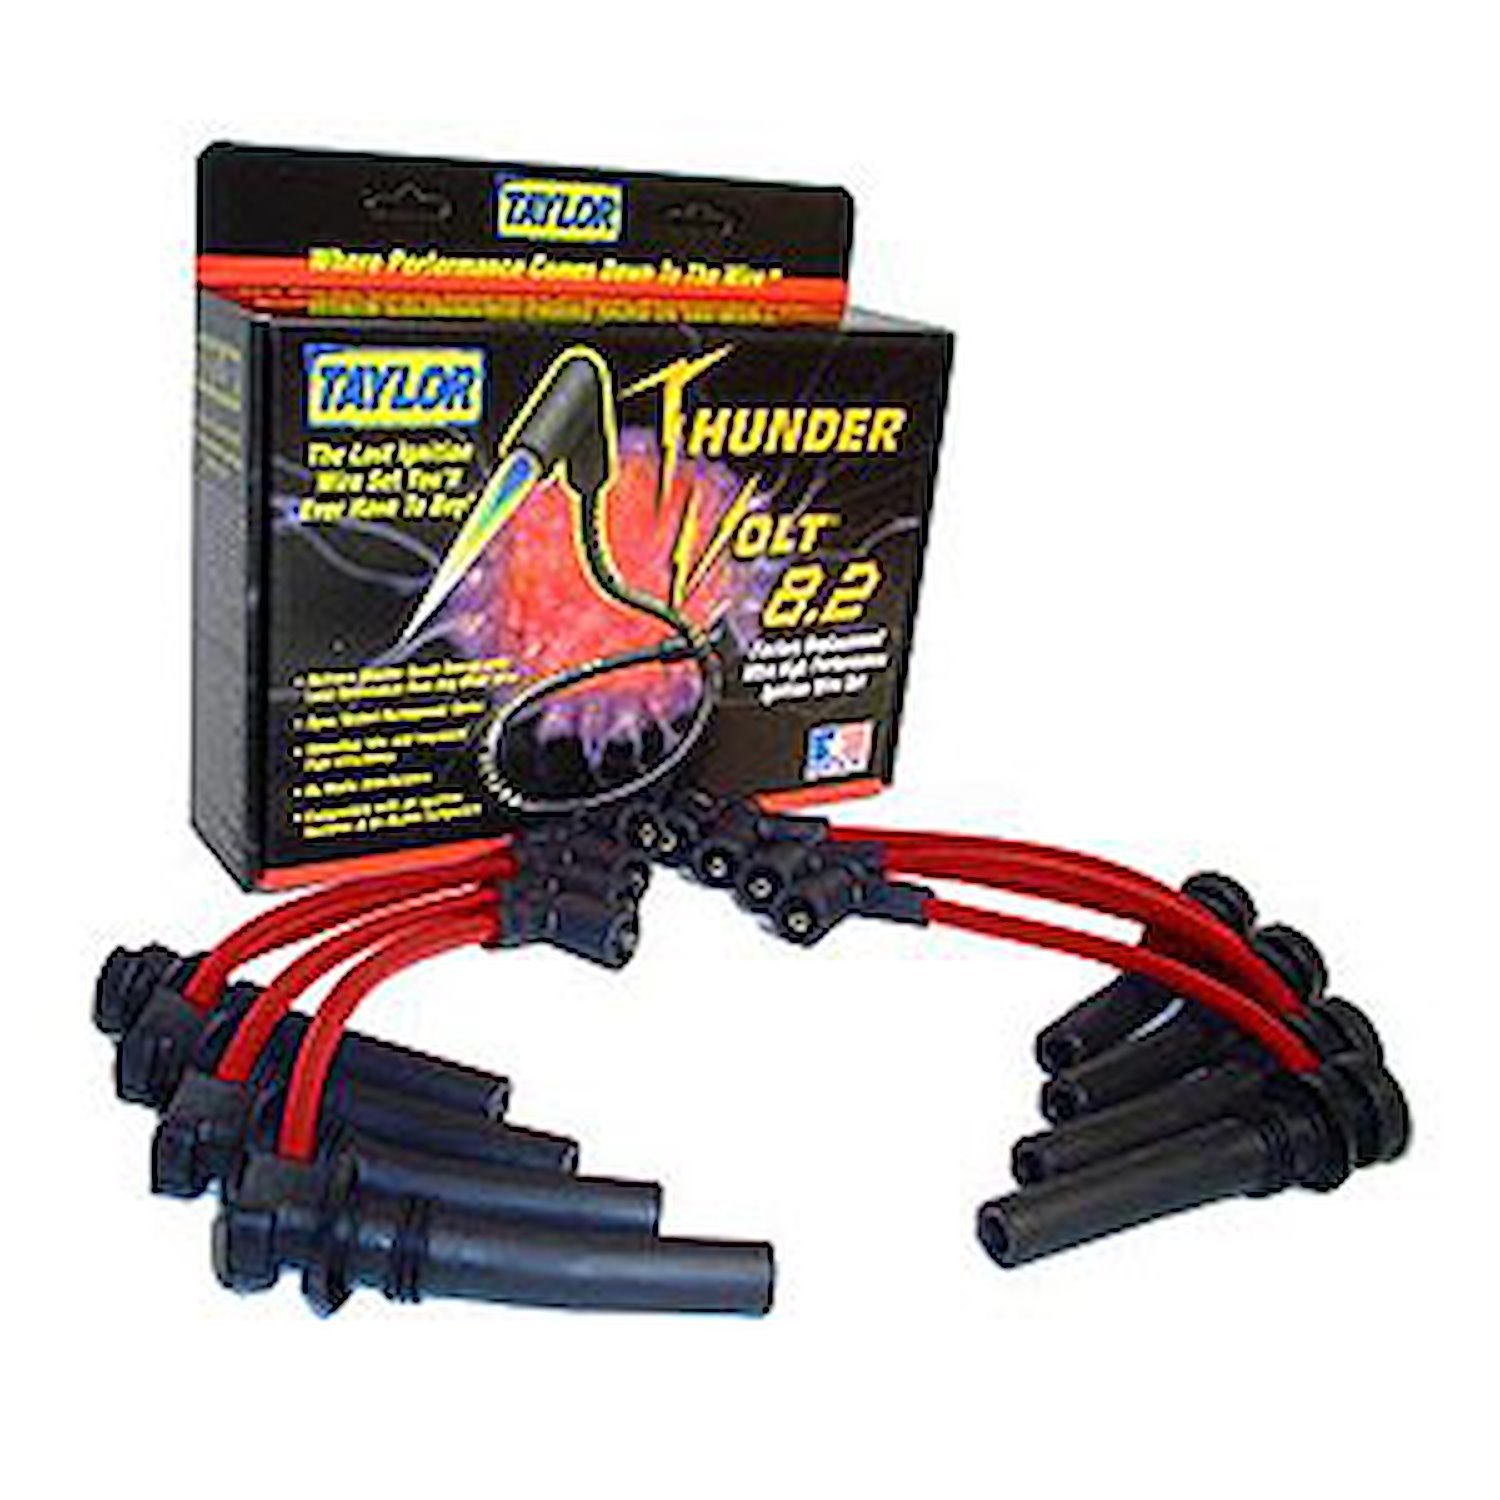 ThunderVolt 8.2mm Spark Plug Wires 2003-05 Dodge 5.7L Hemi